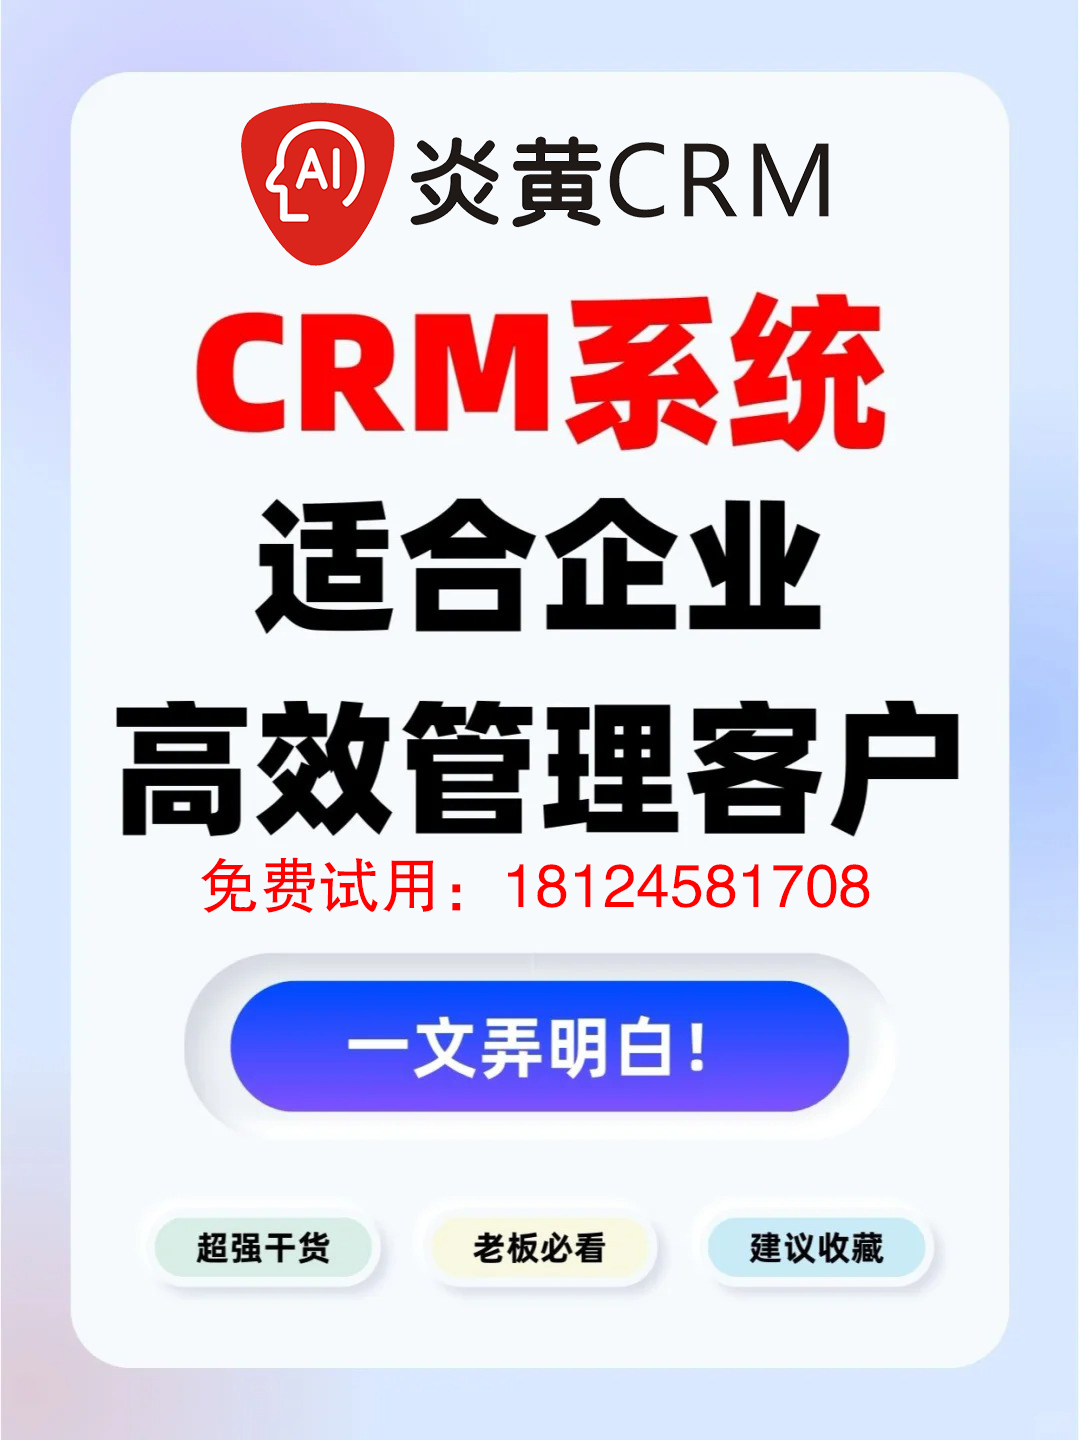 CRM系统适合企业高效管理客户吗？_1_A企鱼通讯云呼系统_来自小红书网页版.jpg